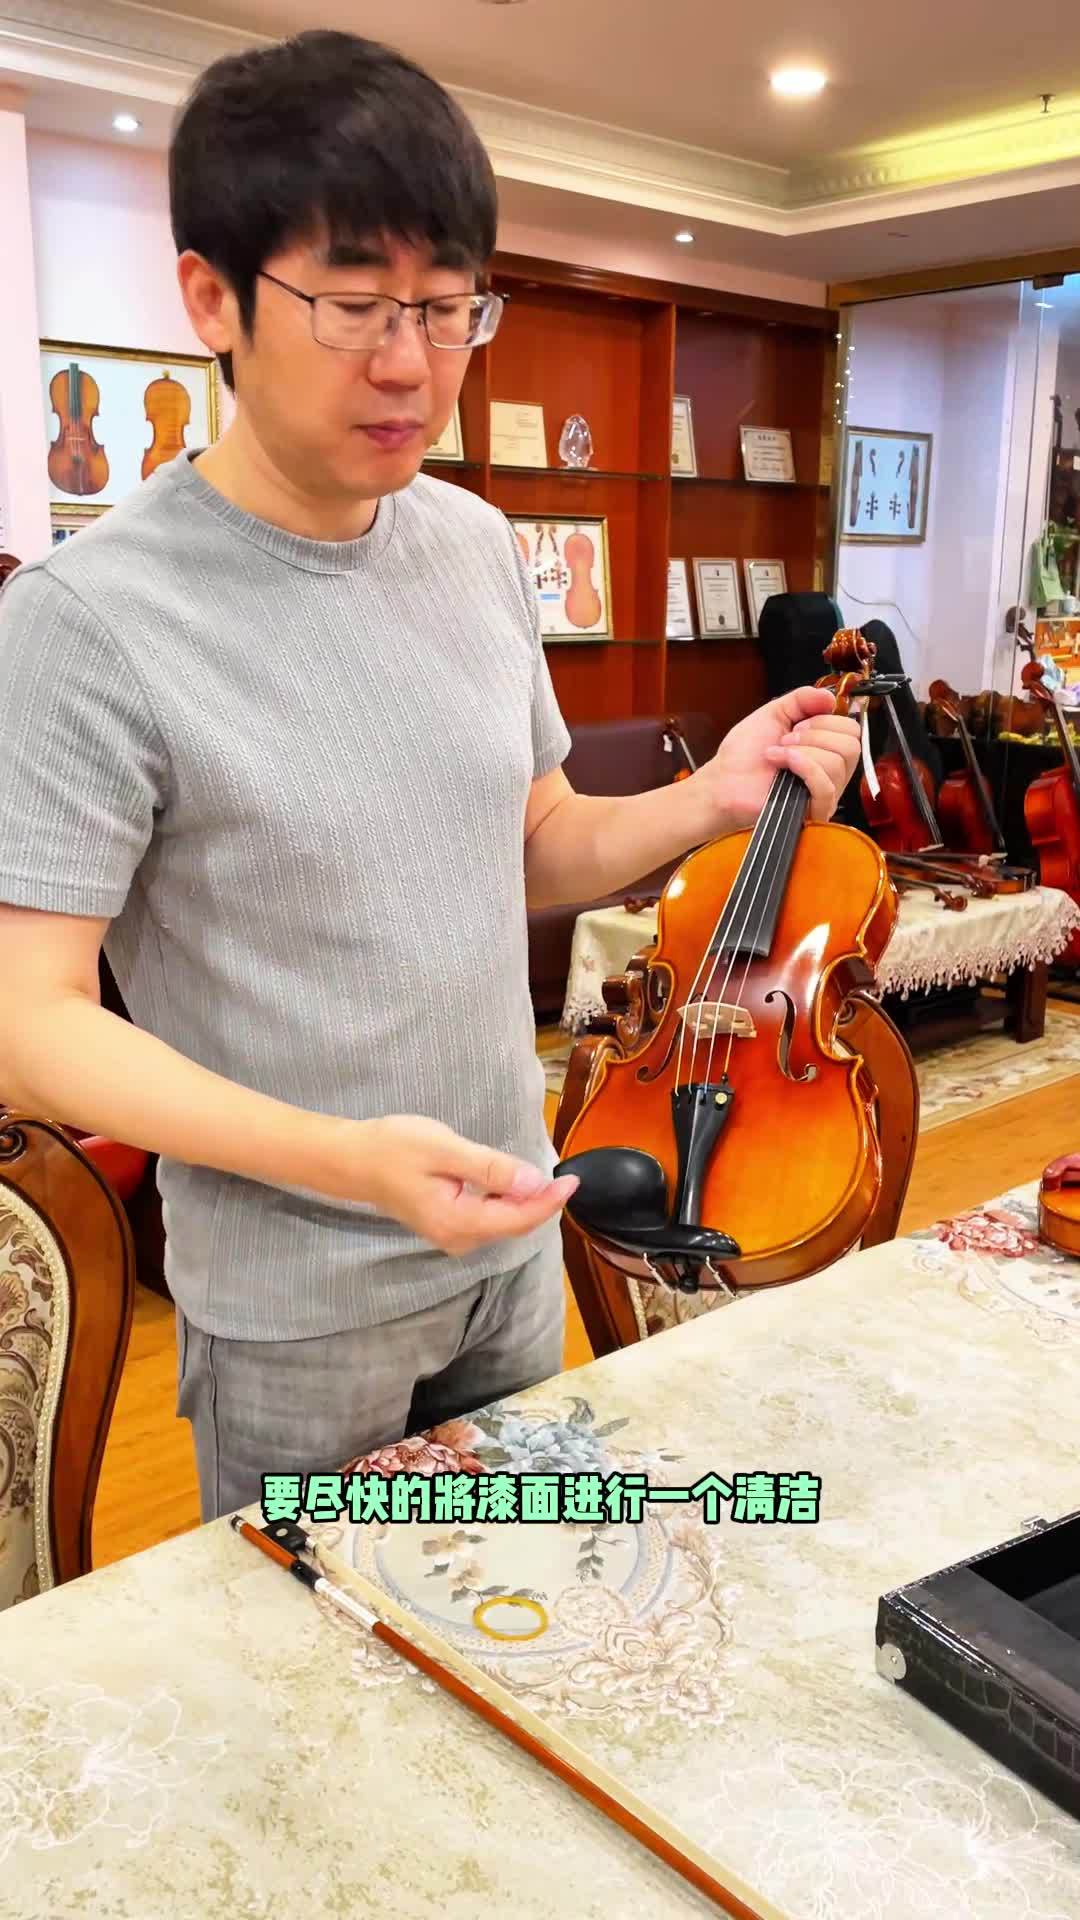 提琴在寄出前，陈磊老师偷偷做了哪些工作？